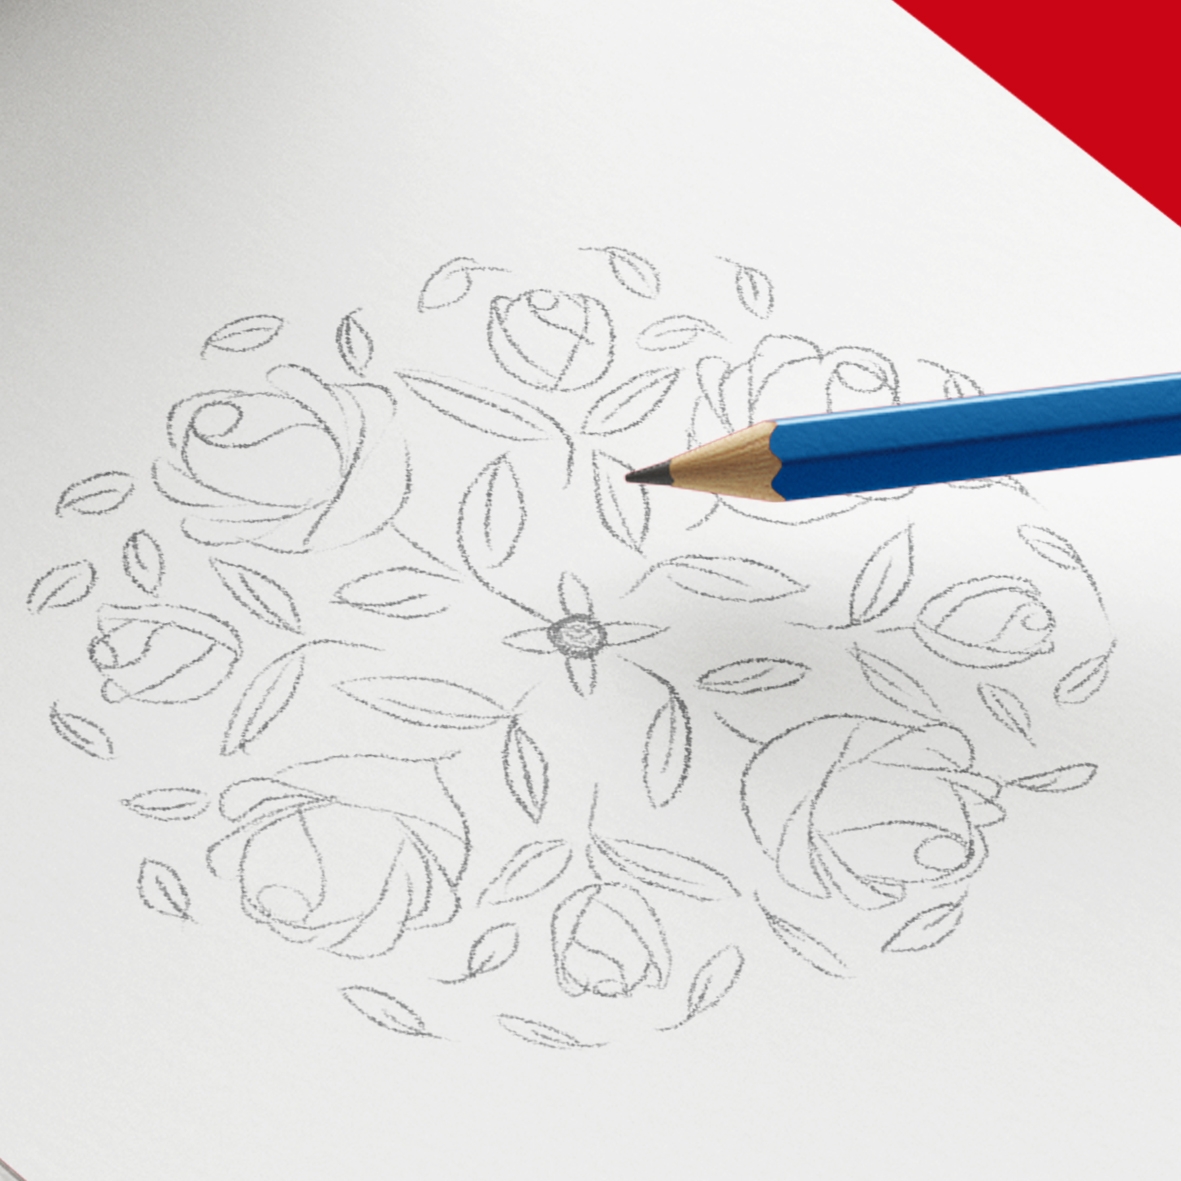 Esquisse logo Roses de la cote d’emeraude, au crayon à papier, sur feuille blanche, avec un crayon à papier bleu